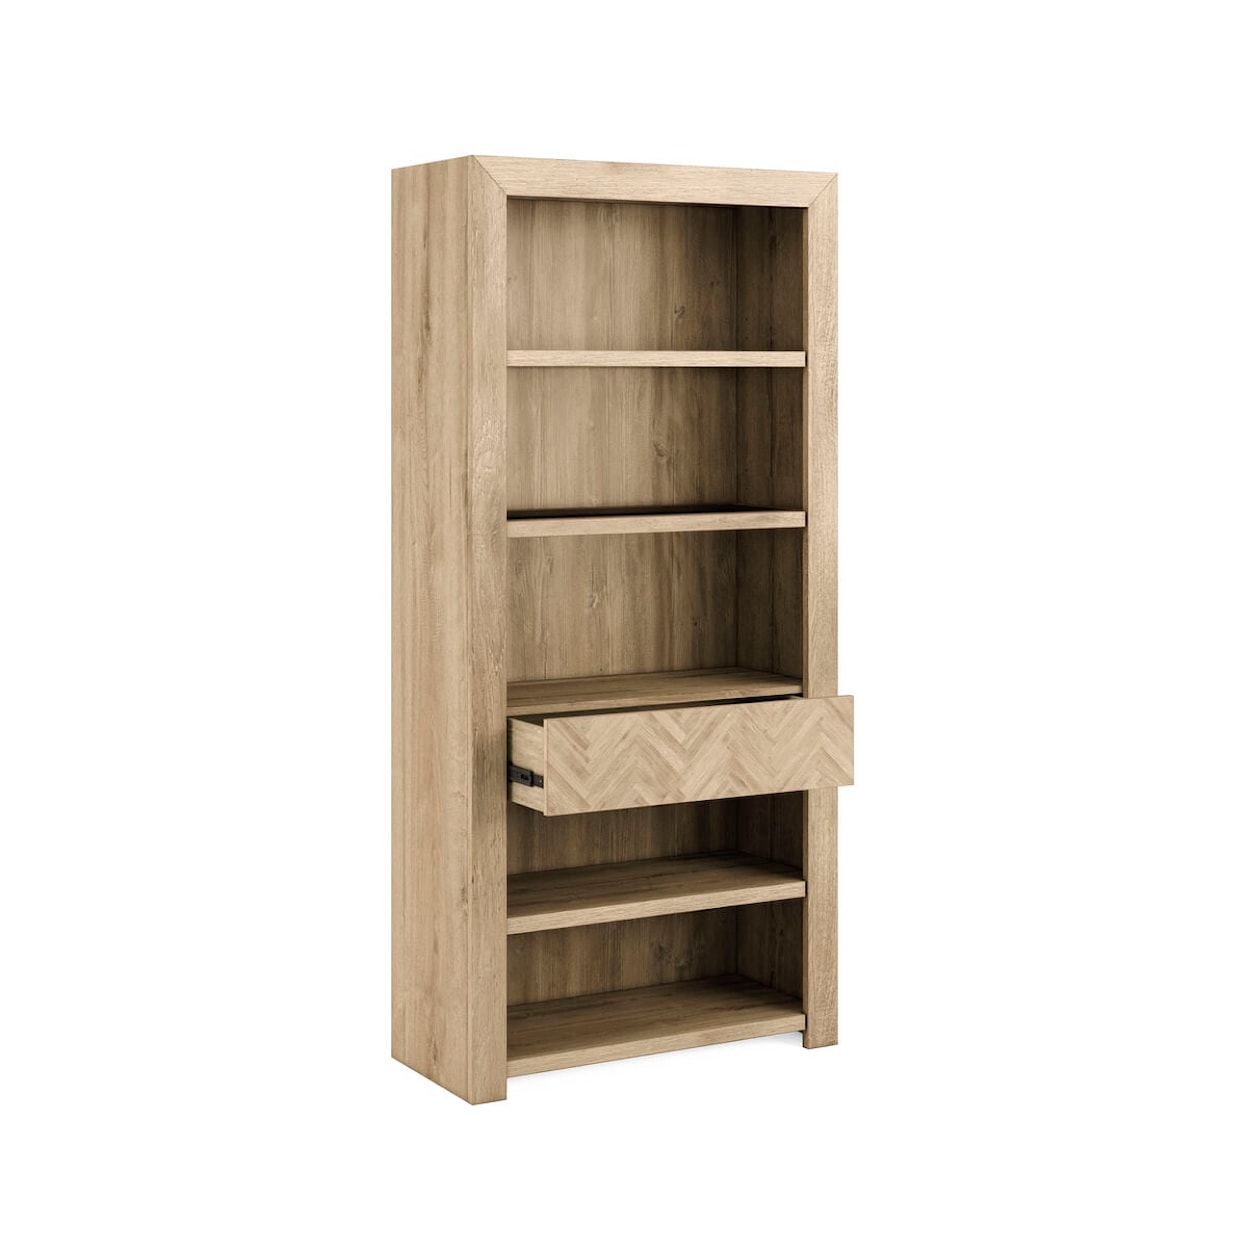 A.R.T. Furniture Inc 322 - Garrison Bookcase